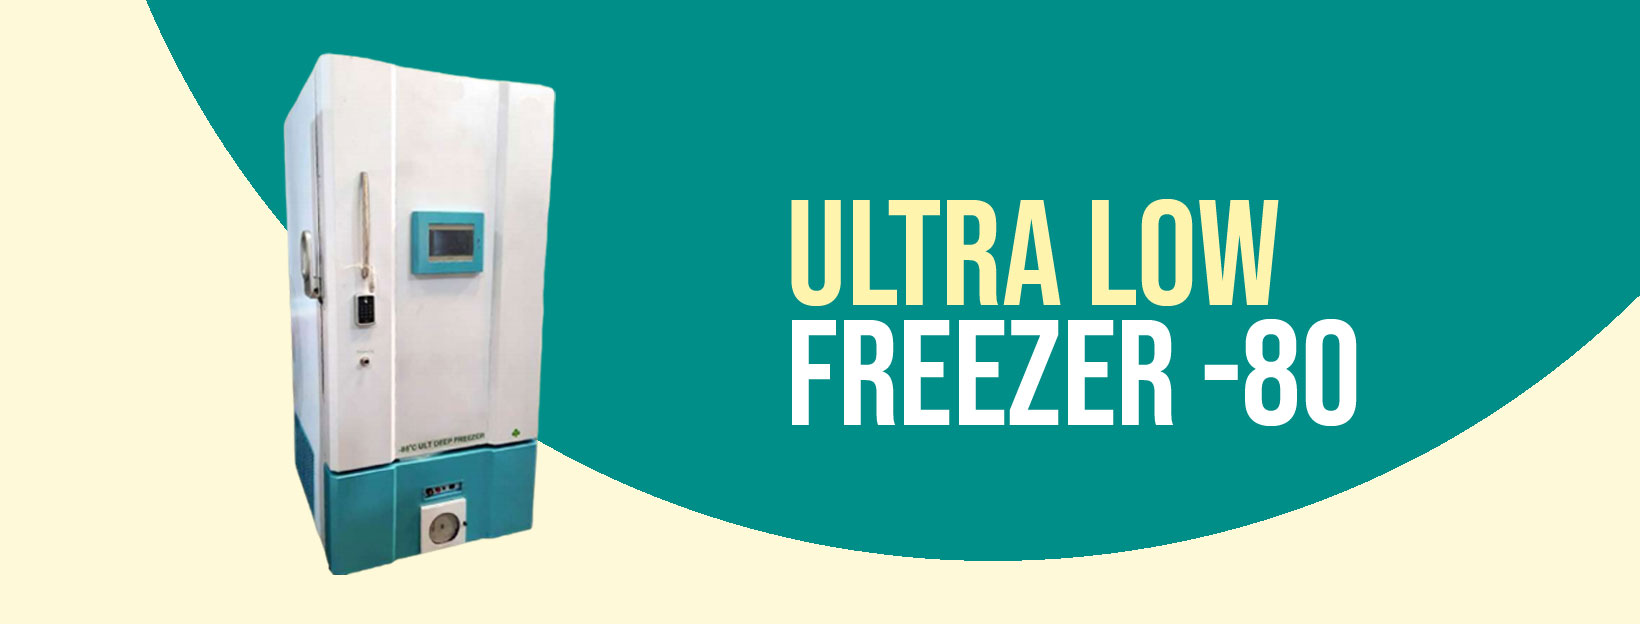 Ultra Low Freezer -80